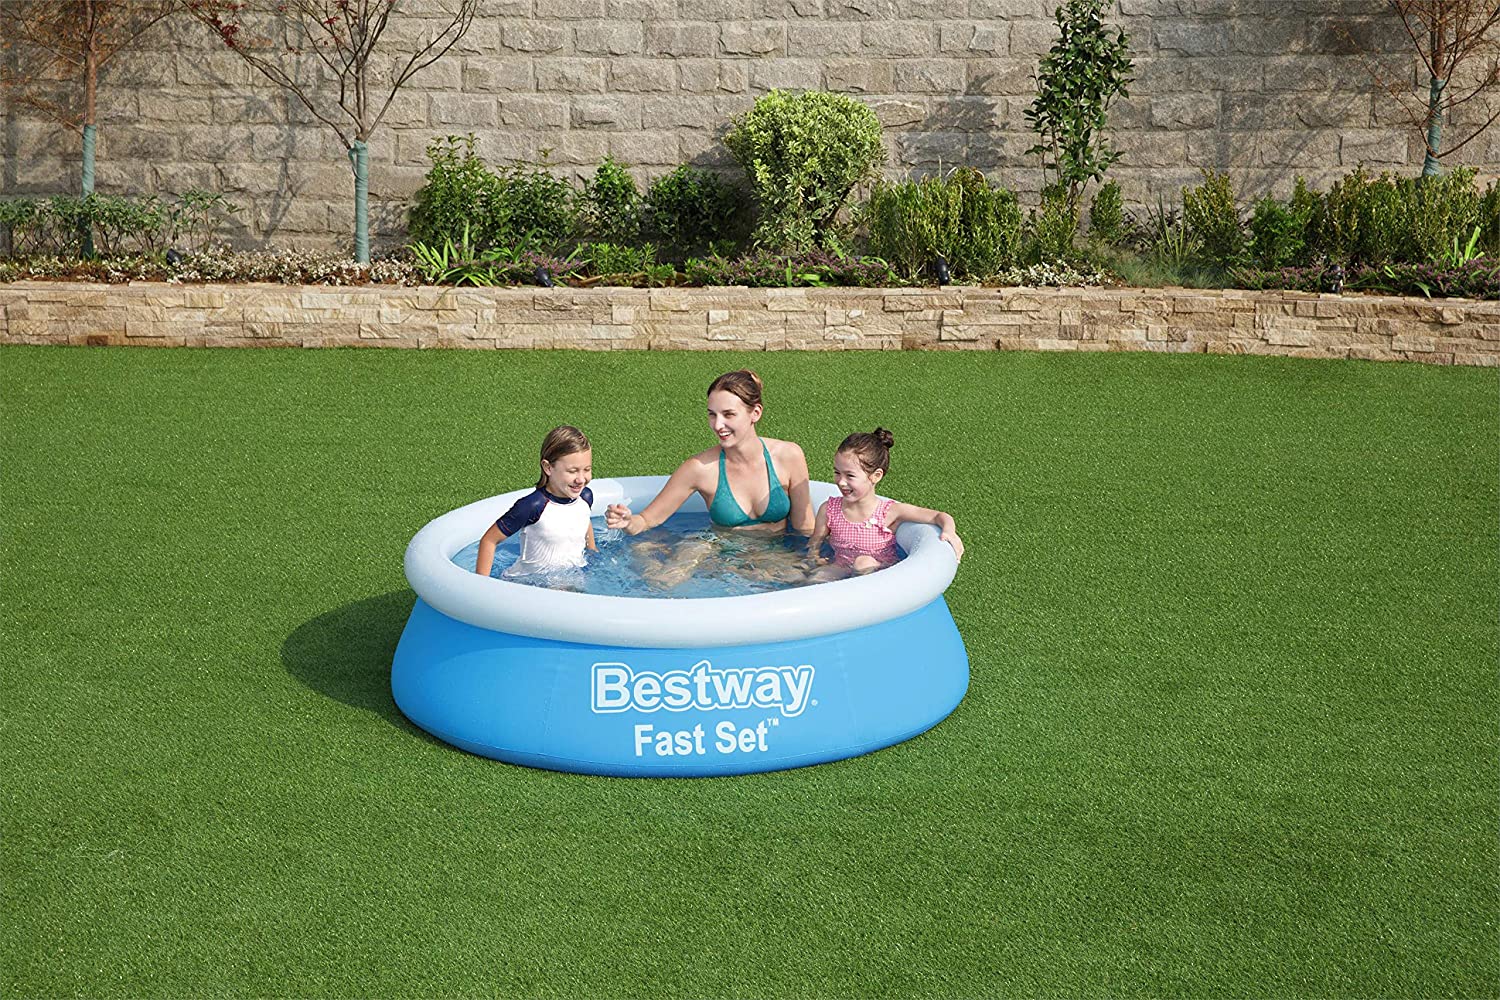 Bestway 6' x 20' Fast Set Inflatable Pool